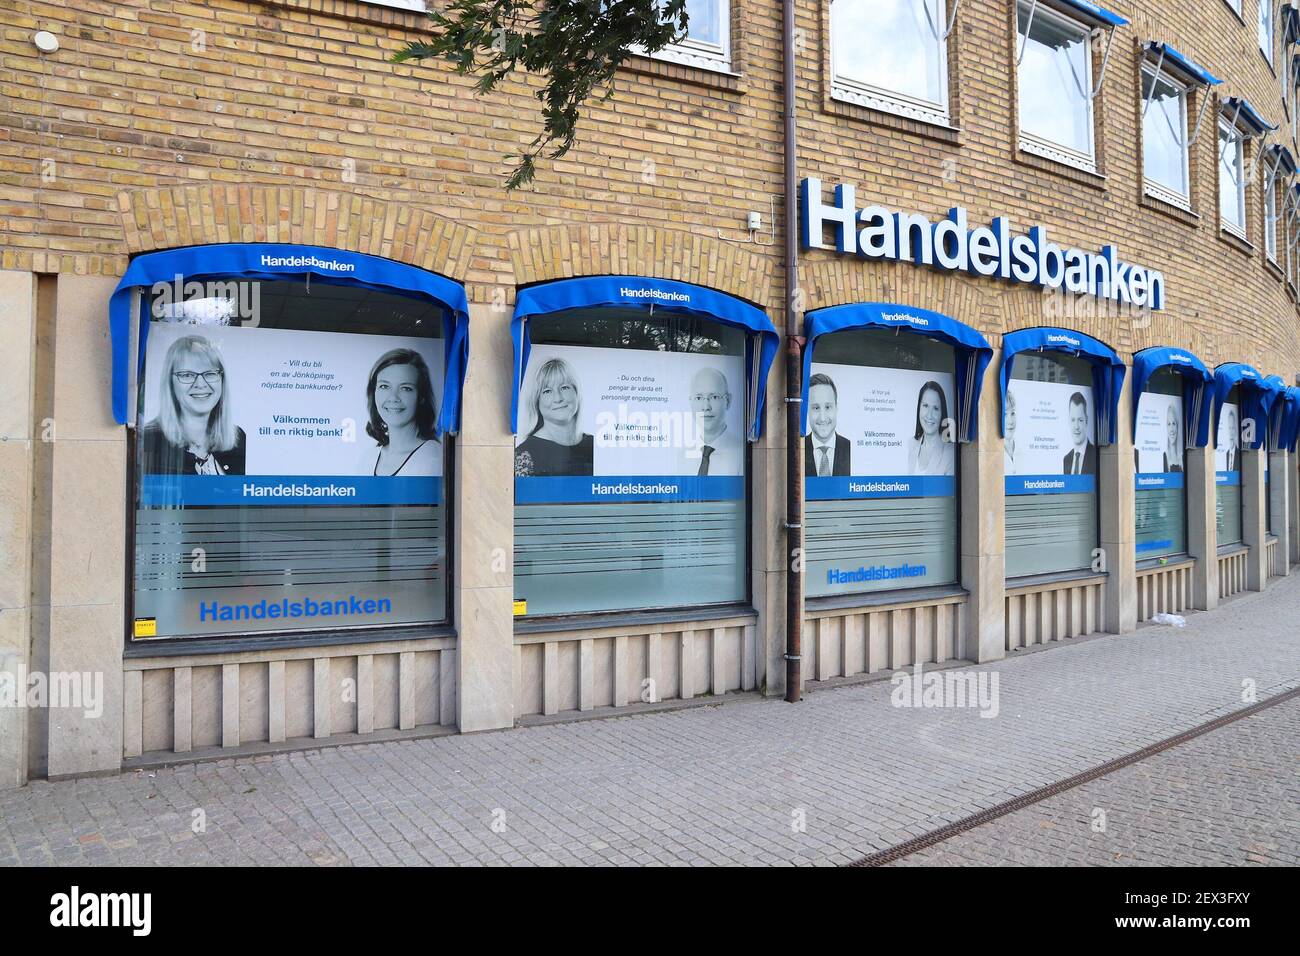 JONKOPING, SWEDEN - AUGUST 25, 2018: Handelsbanken bank in Jonkoping, Sweden. It is one of largest banks in Sweden with 460 locations. Stock Photo